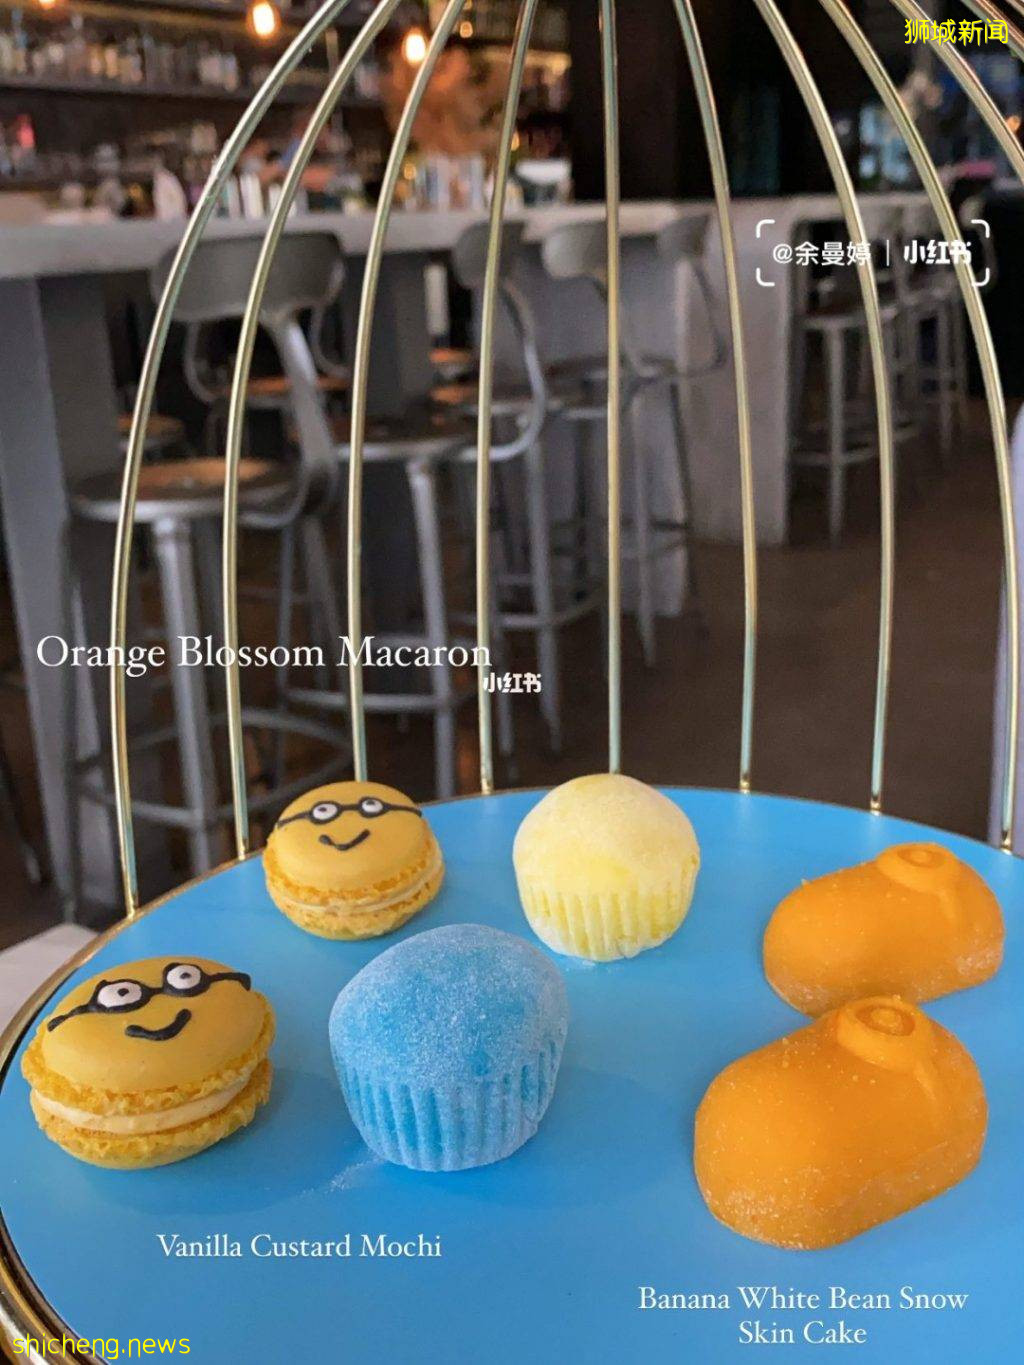 可愛預警⚡2am:dessertbar“Minion下午茶”🙌小黃人造型甜點、好吃好拍照，一人$55💰